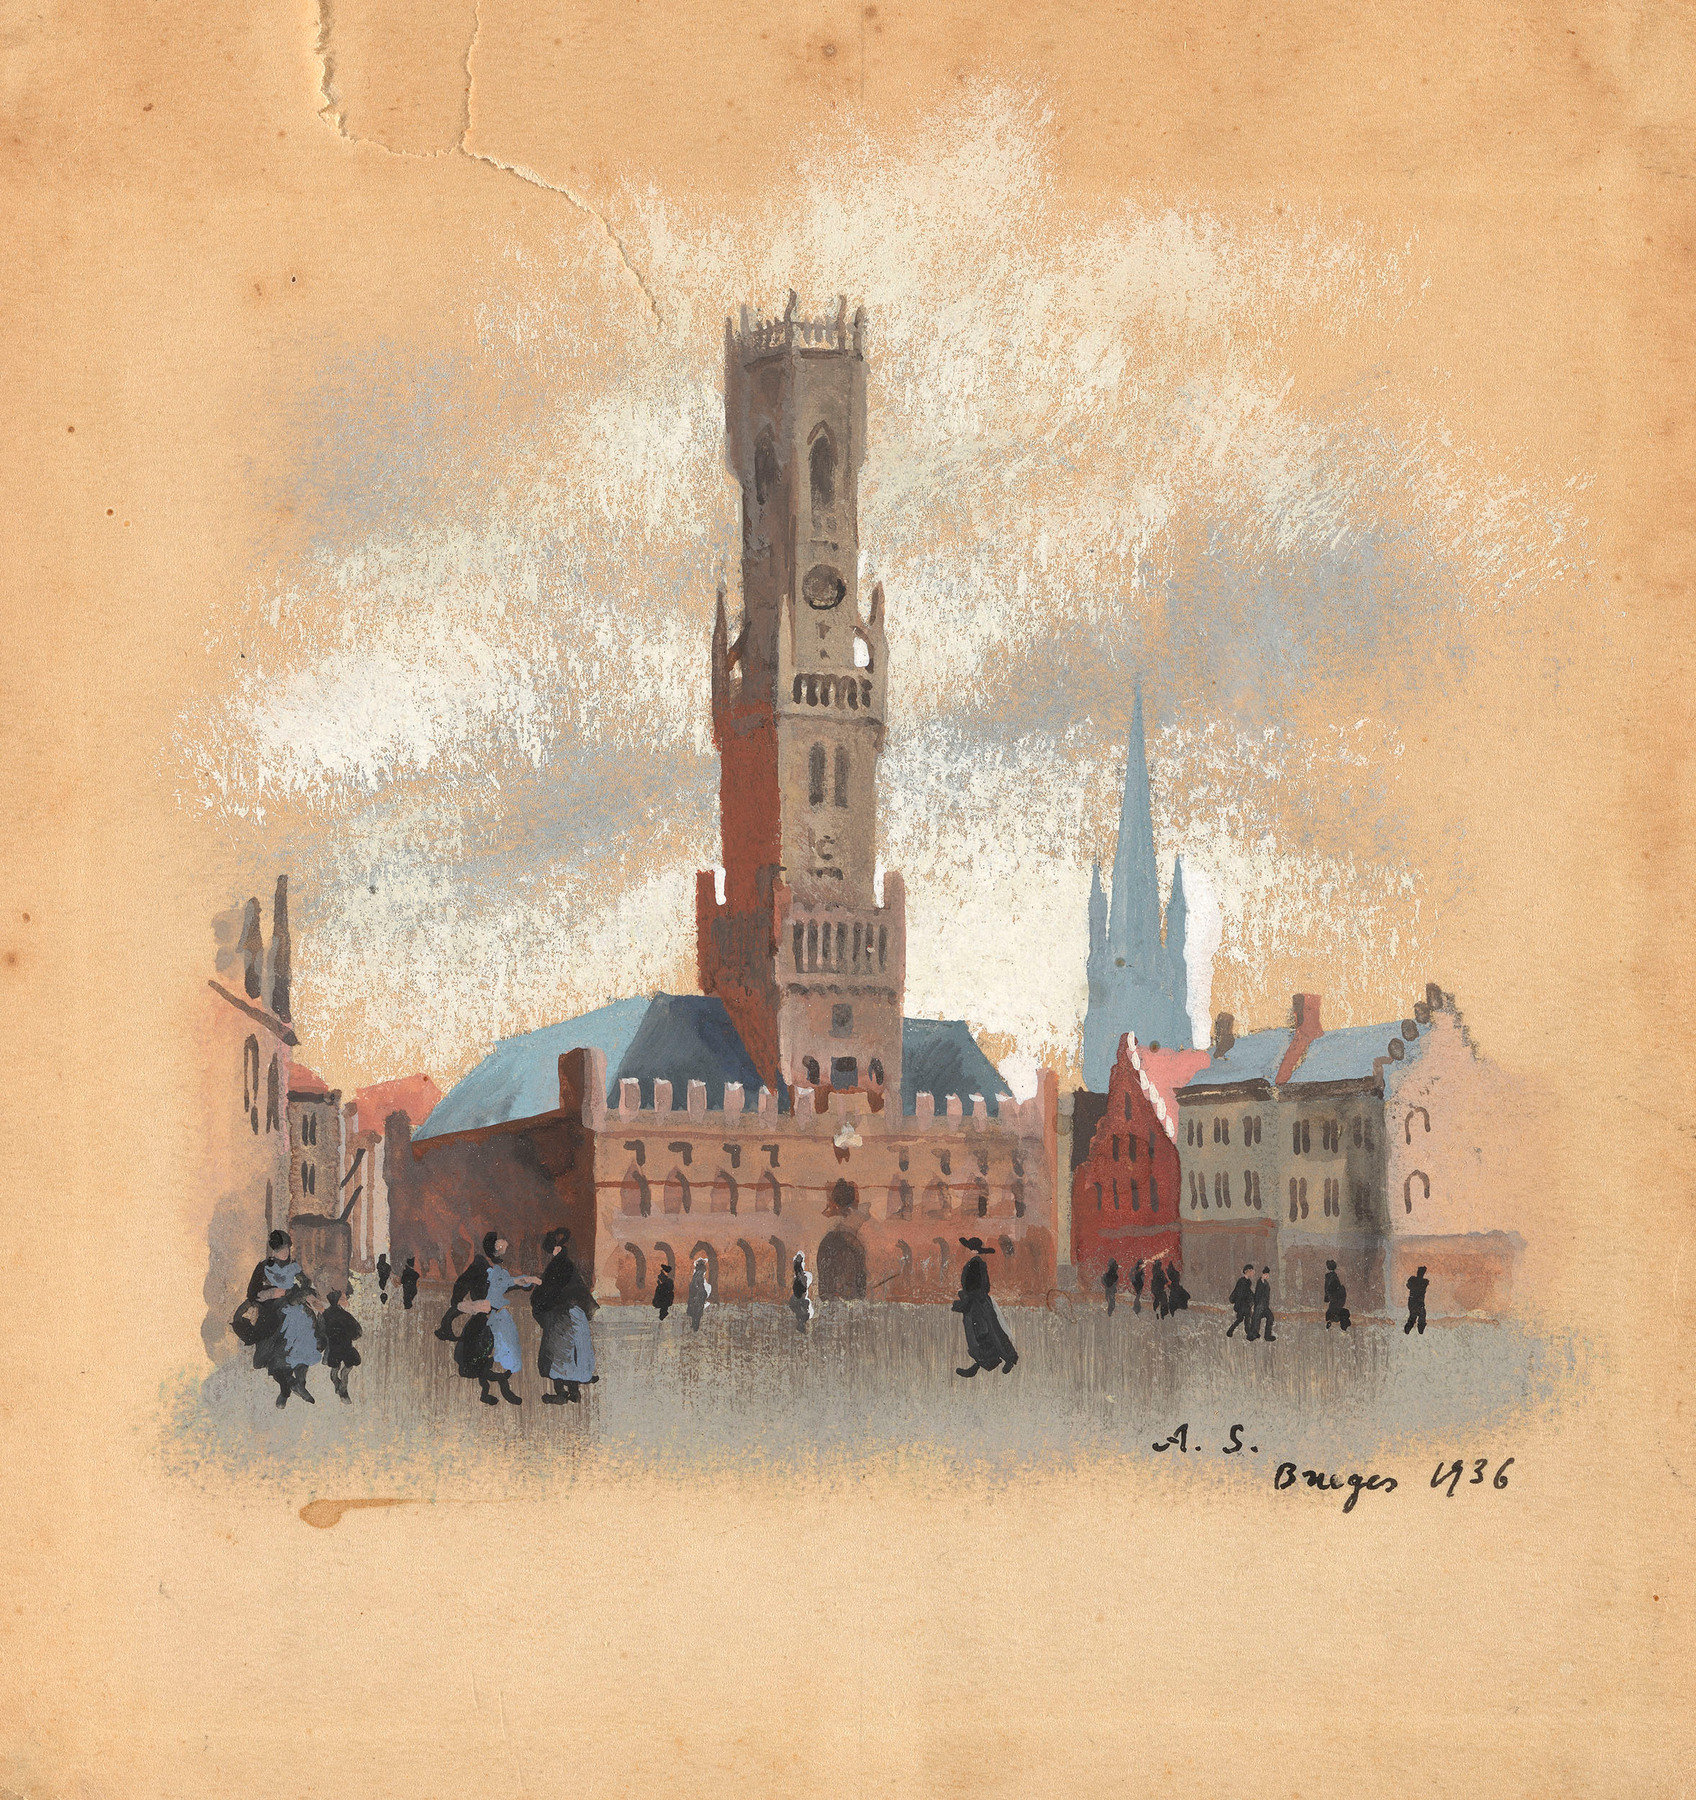 Eglise de Jerusalem à Bruges and Le Beffroi de Bruges, Grand-Place, two works